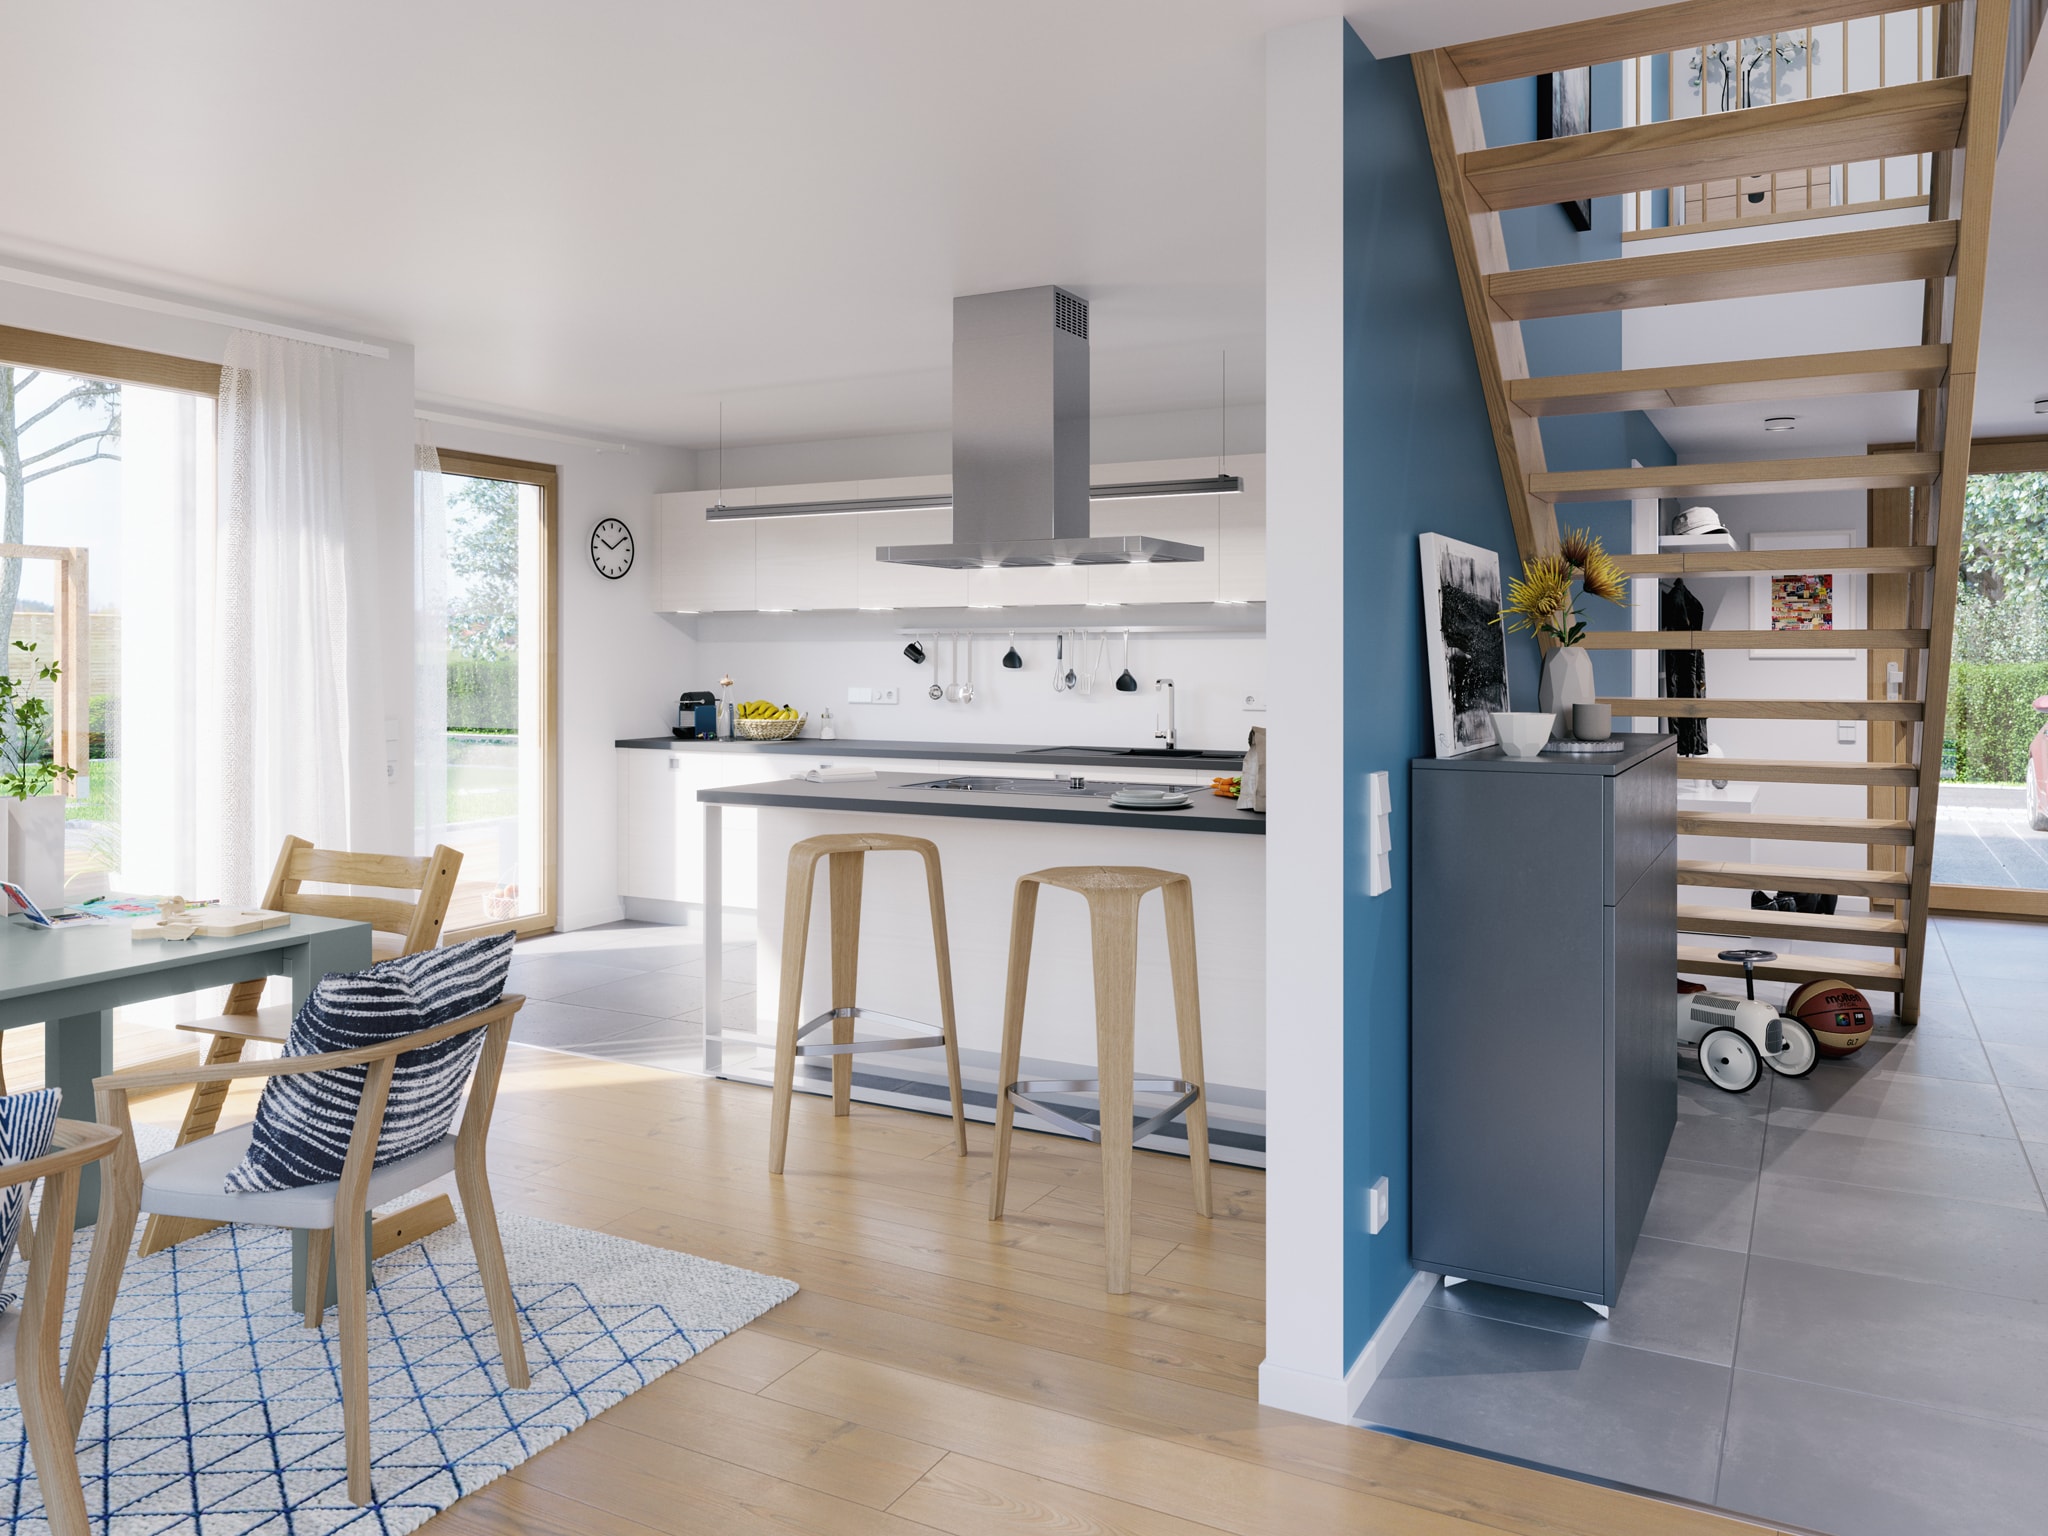 Wohn-Esszimmer mit offener Küche - Wohnideen Living Haus Fertighaus SUNSHINE 154 V7 - HausbauDirekt.de